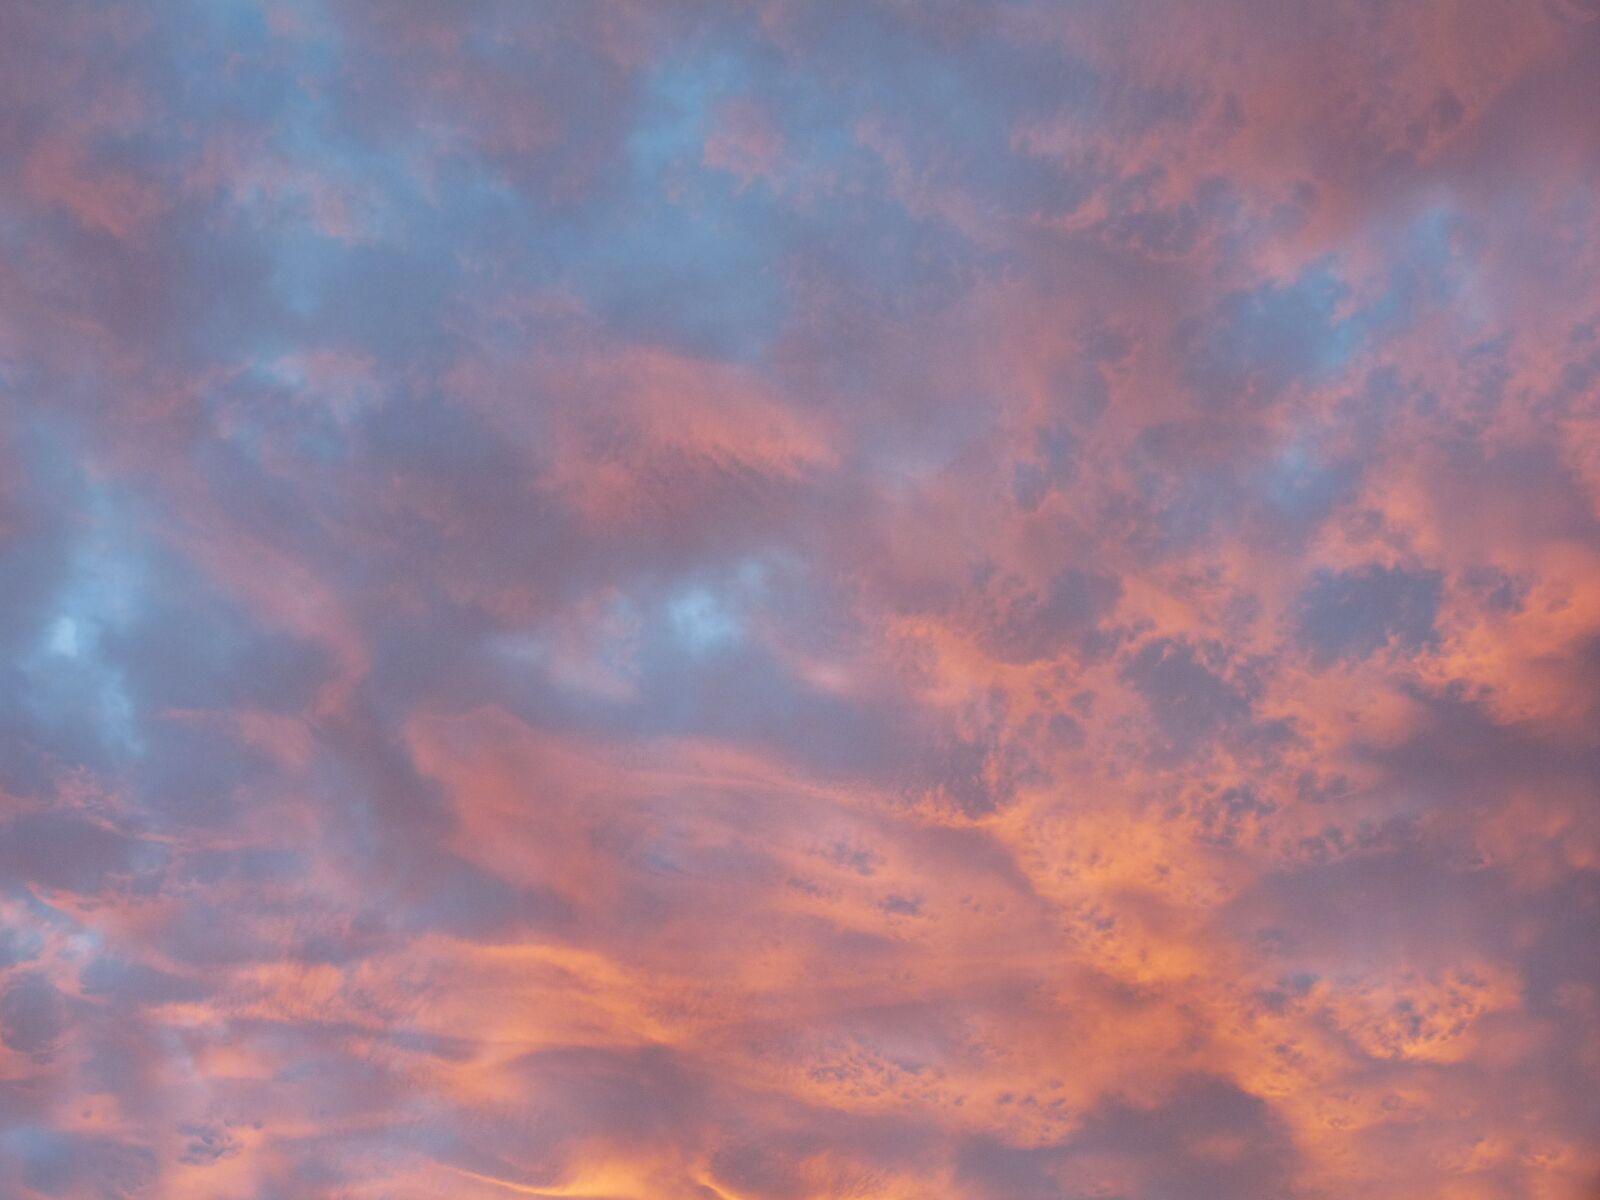 Panasonic Lumix DMC-FZ28 sample photo. Sunset, evening, sky photography